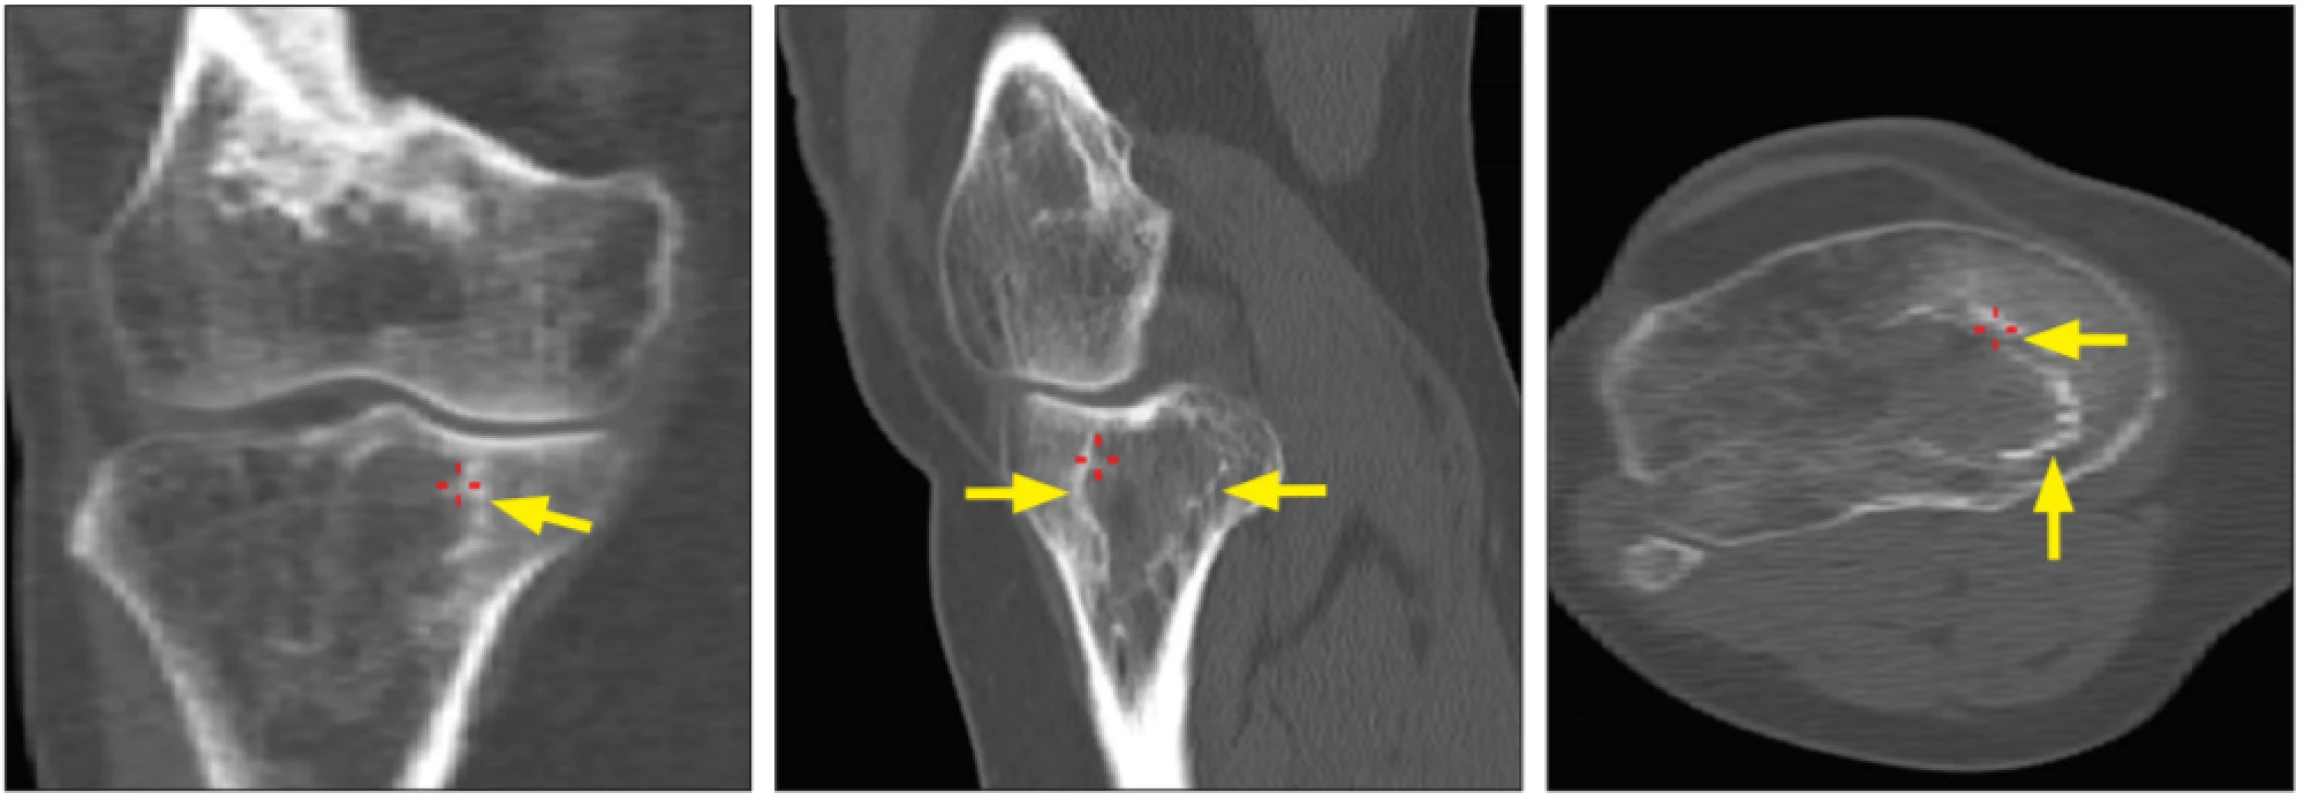 Plnohodnotné CT kolen (rekonstrukce á 2 mm), zobrazeno levé koleno. Šipkami označen nepravidelný sklerotický lem kolem dřeňové
dutiny v oblasti proximální tibie (vlevo řez ve frontální rovině, uprostřed řez v sagitální a vpravo v transverzální rovině).